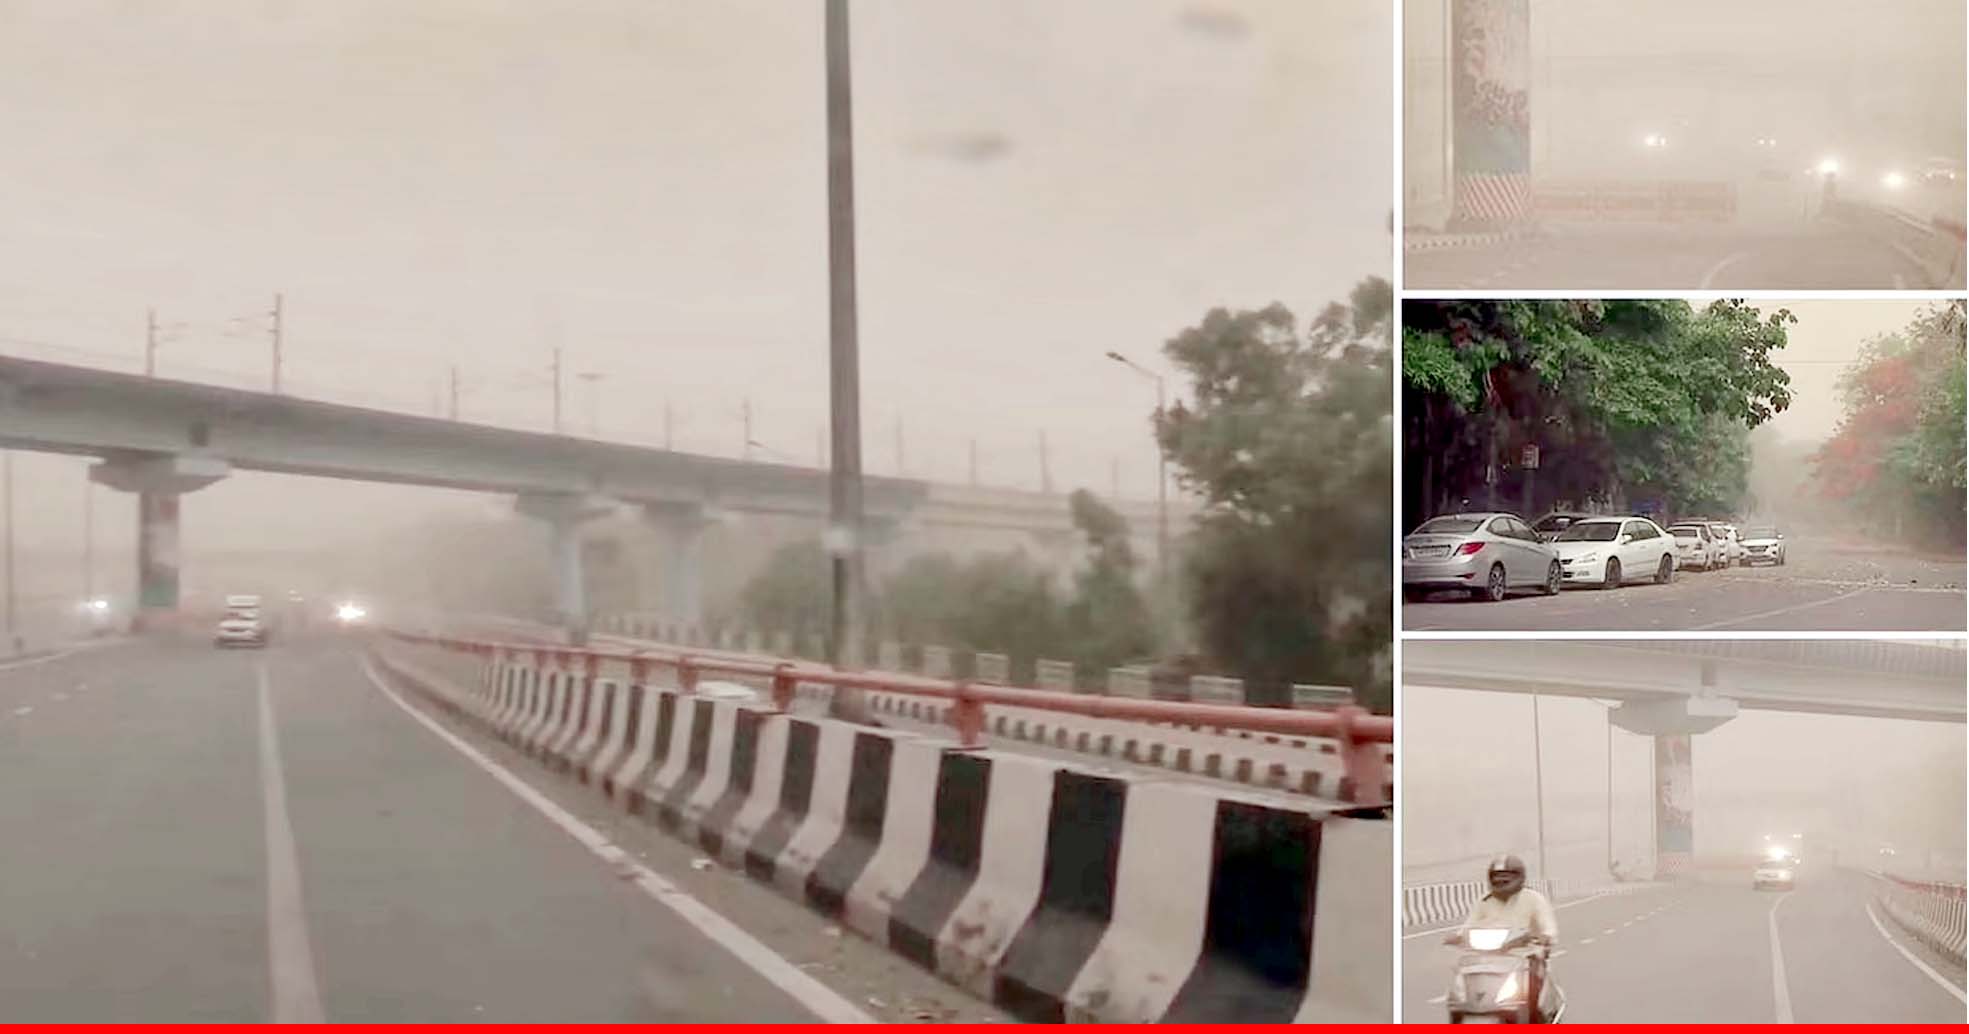 राष्ट्रीय राजधानी दिल्ली में आंधी के साथ बारिश की संभावना, न्यूनतम तापमान 24.8 डिग्री